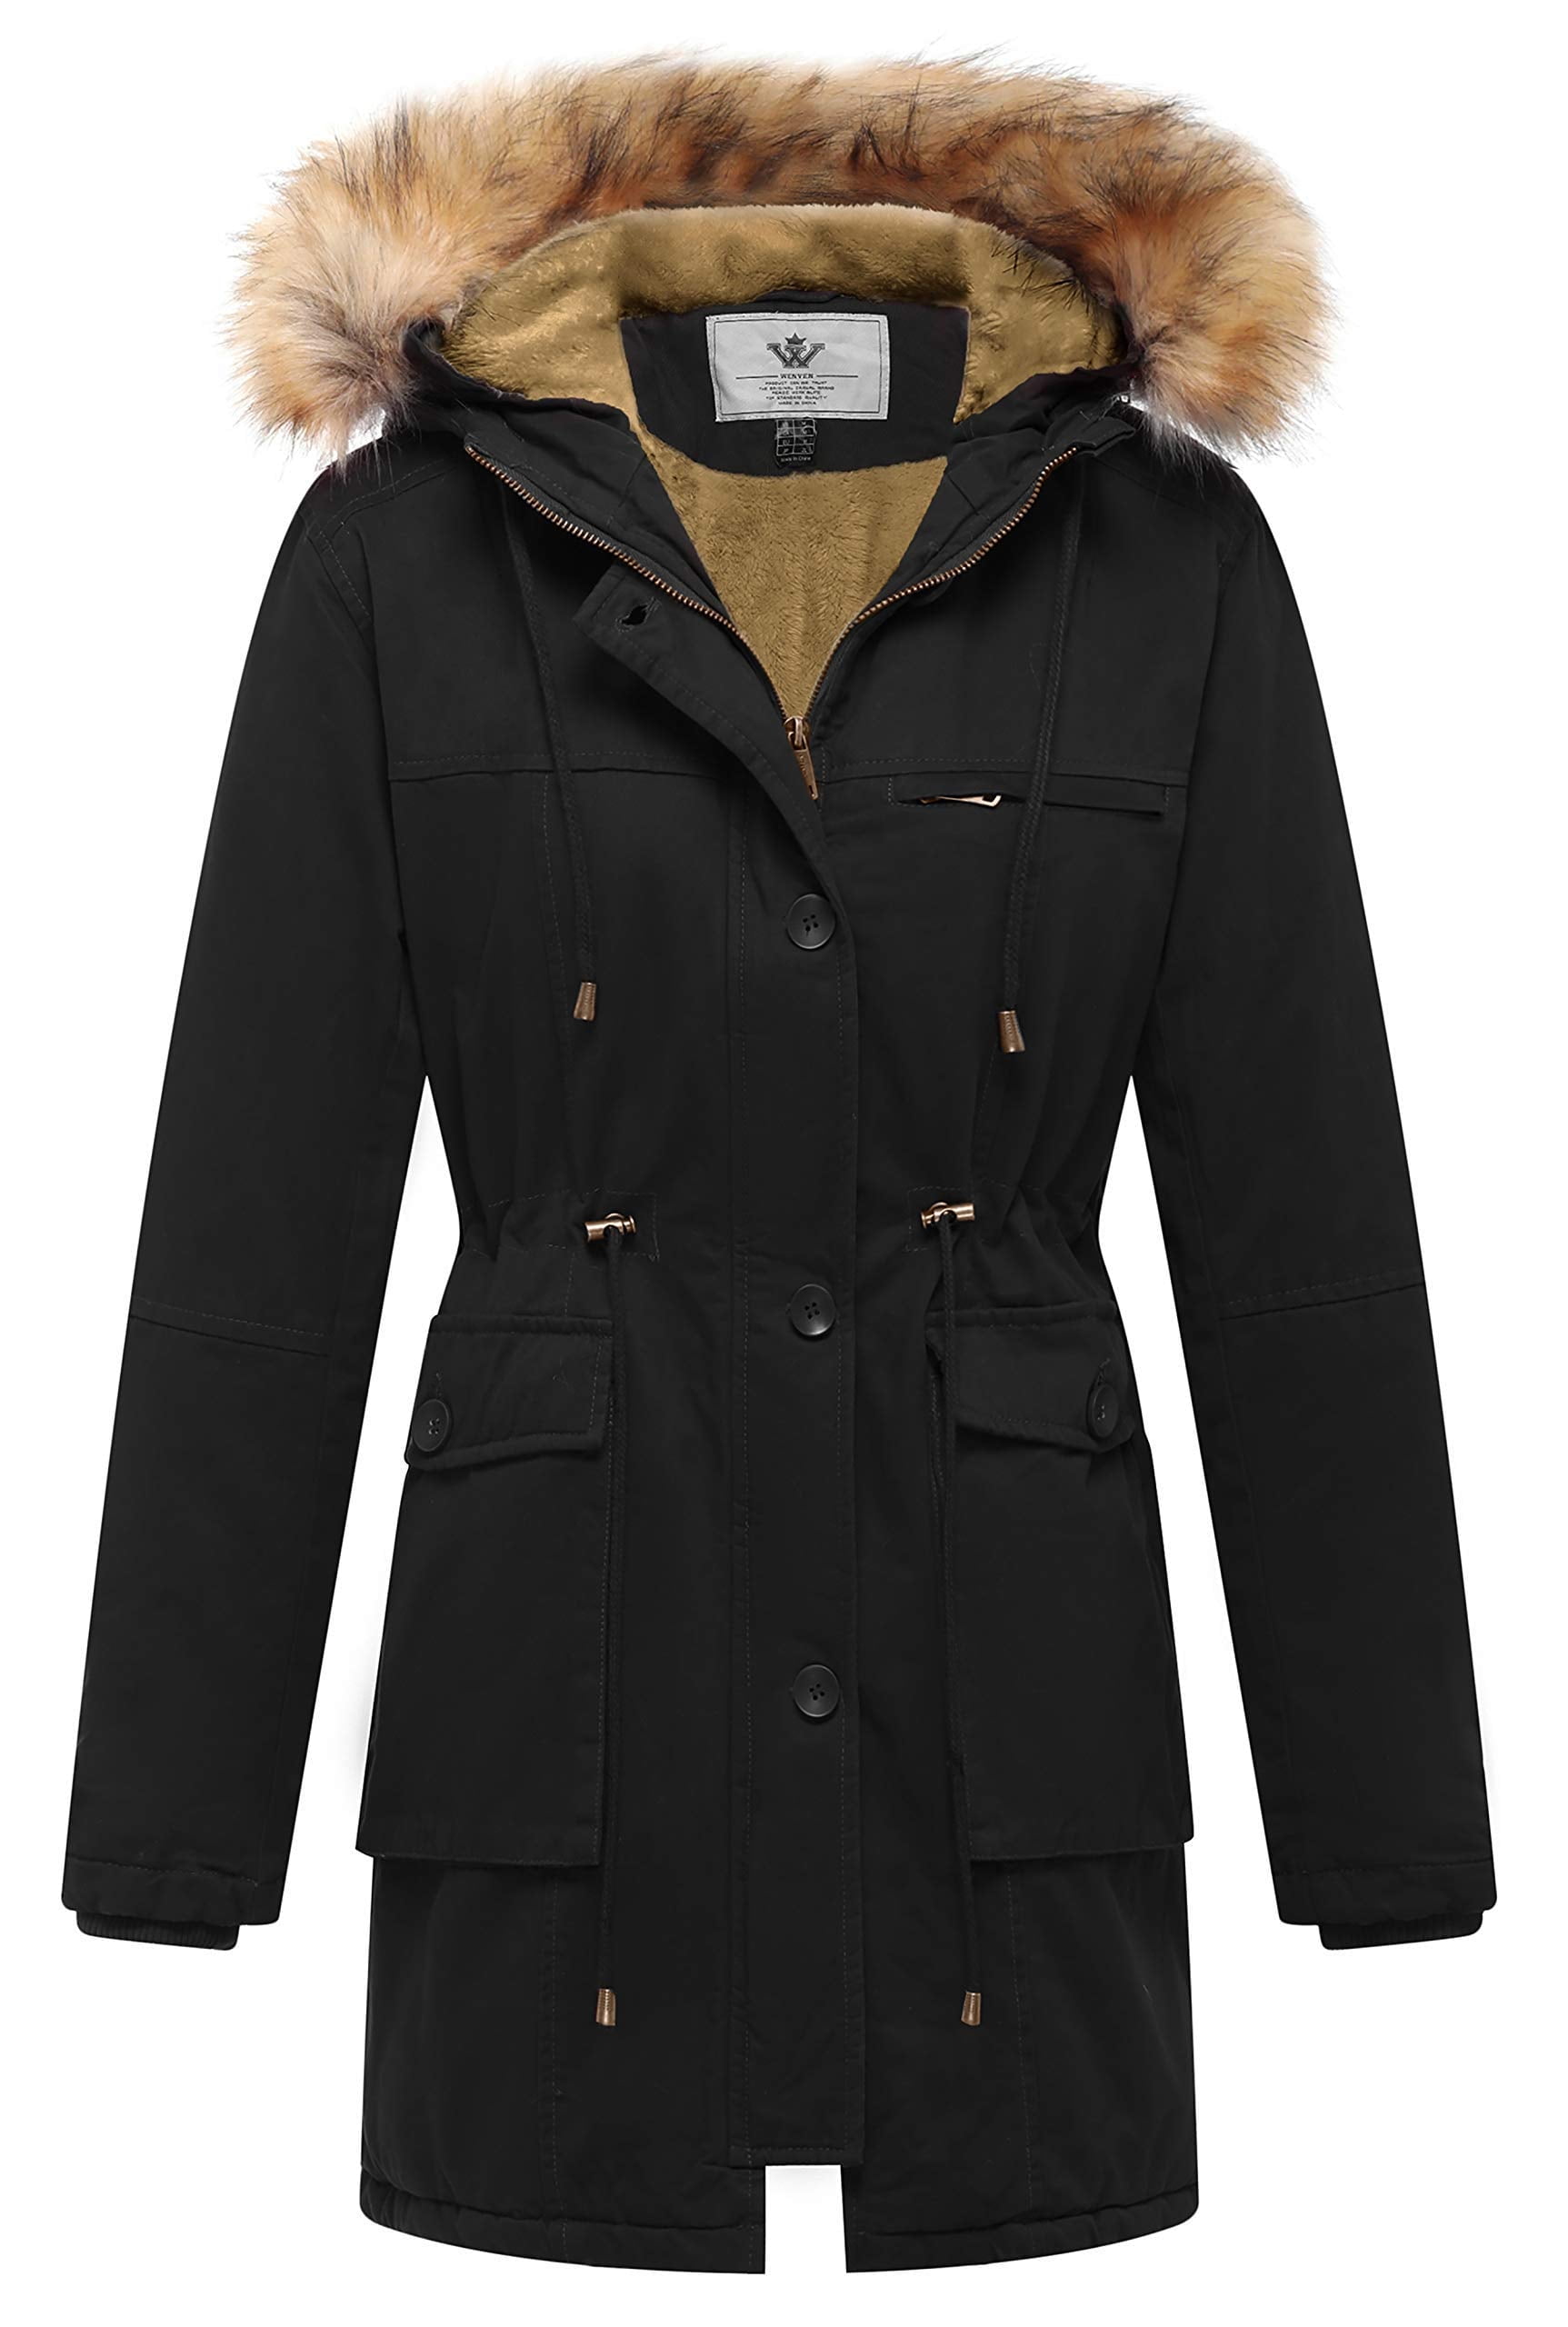 LEZMORE Cuff Heavy Lapel Jacket Winter Jacket Warm Furry Coat Men\'s Coat  M-3XL